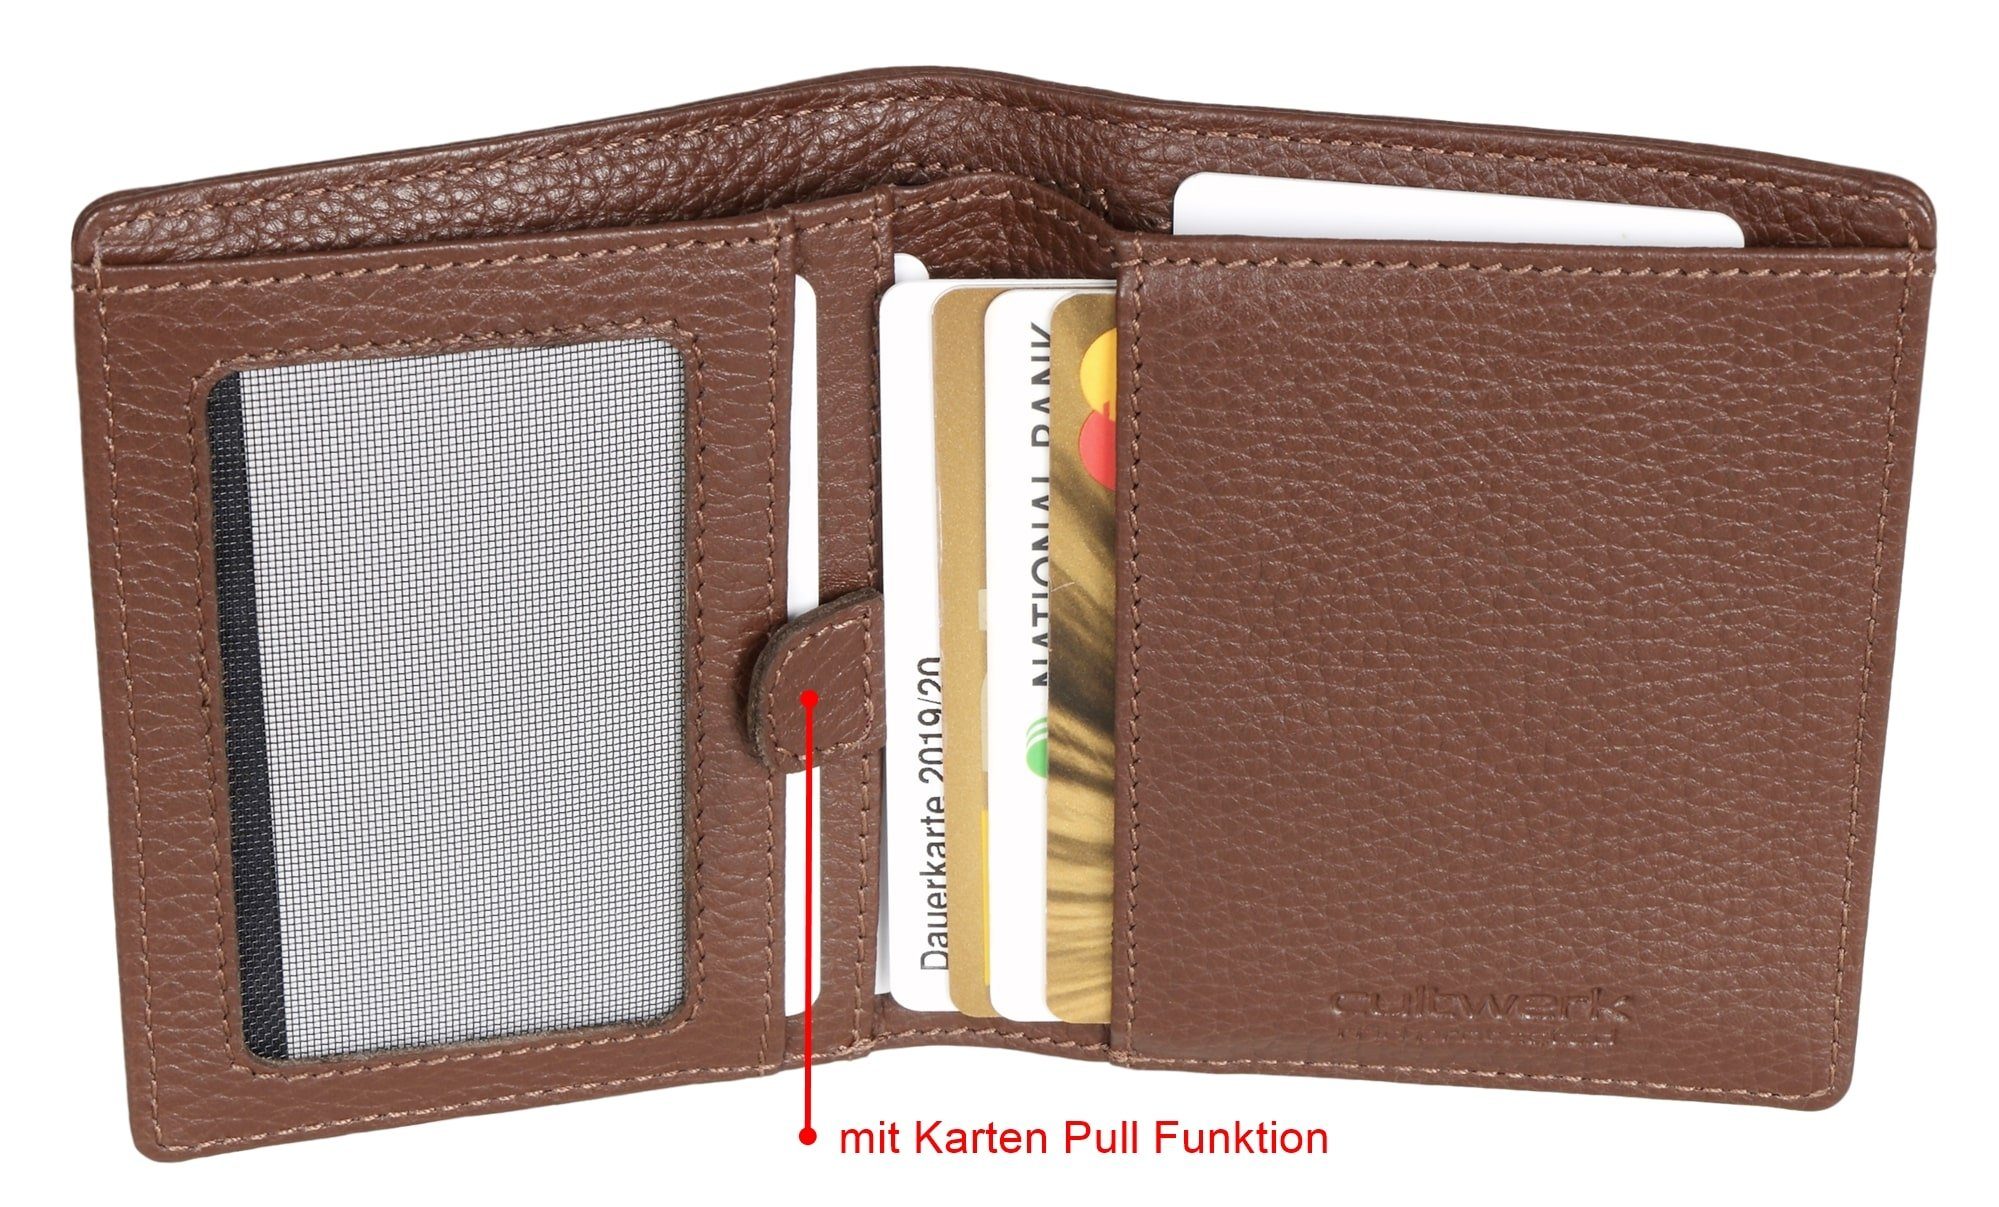 mit Brown Modell für aus Geldbörse Echtleder RFID-Schutz Pull Braun und Farbe 5 Bear mit Funktion Kartenfächern, IV Cultwerk Card Herren Braun-Espresso